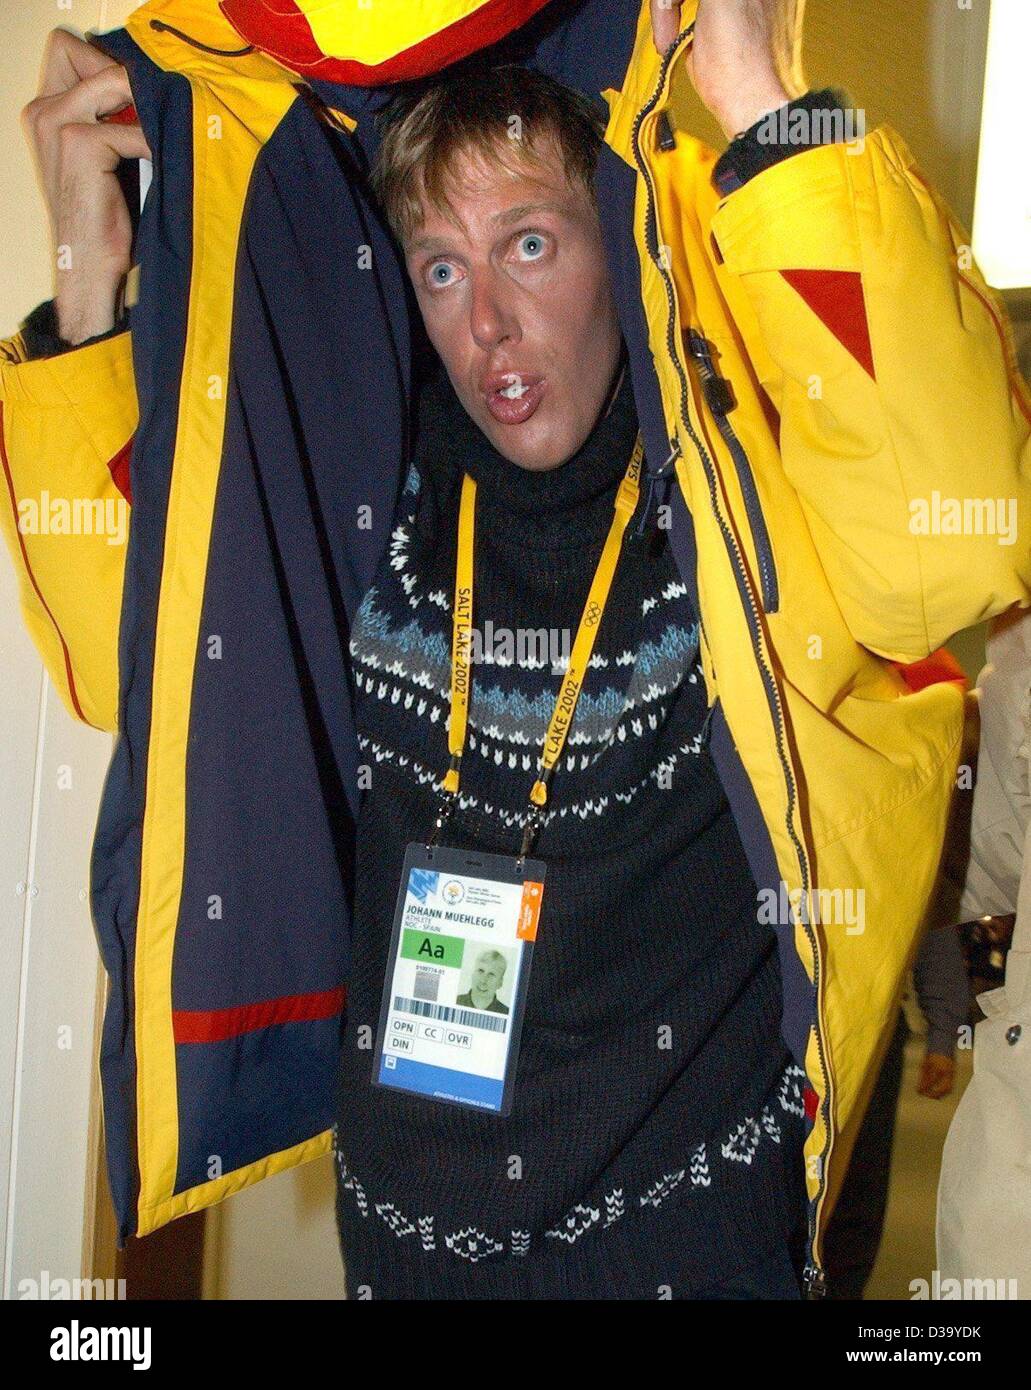 (Dpa) - XIX Olympische Winterspiele: Johann Muehlegg, deutscher Langläufer starten für Spanien, versucht, sein Gesicht unter seiner Jacke zu verbergen, als er auf seinem Weg zu einem Interview mit einem deutschen TV-Sender, 24.2.2002 in Salt Lake City ist. 31-Year-Old Muehlegg aberkannt wurde seine Goldmedaille bei Männern Einzell Stockfoto